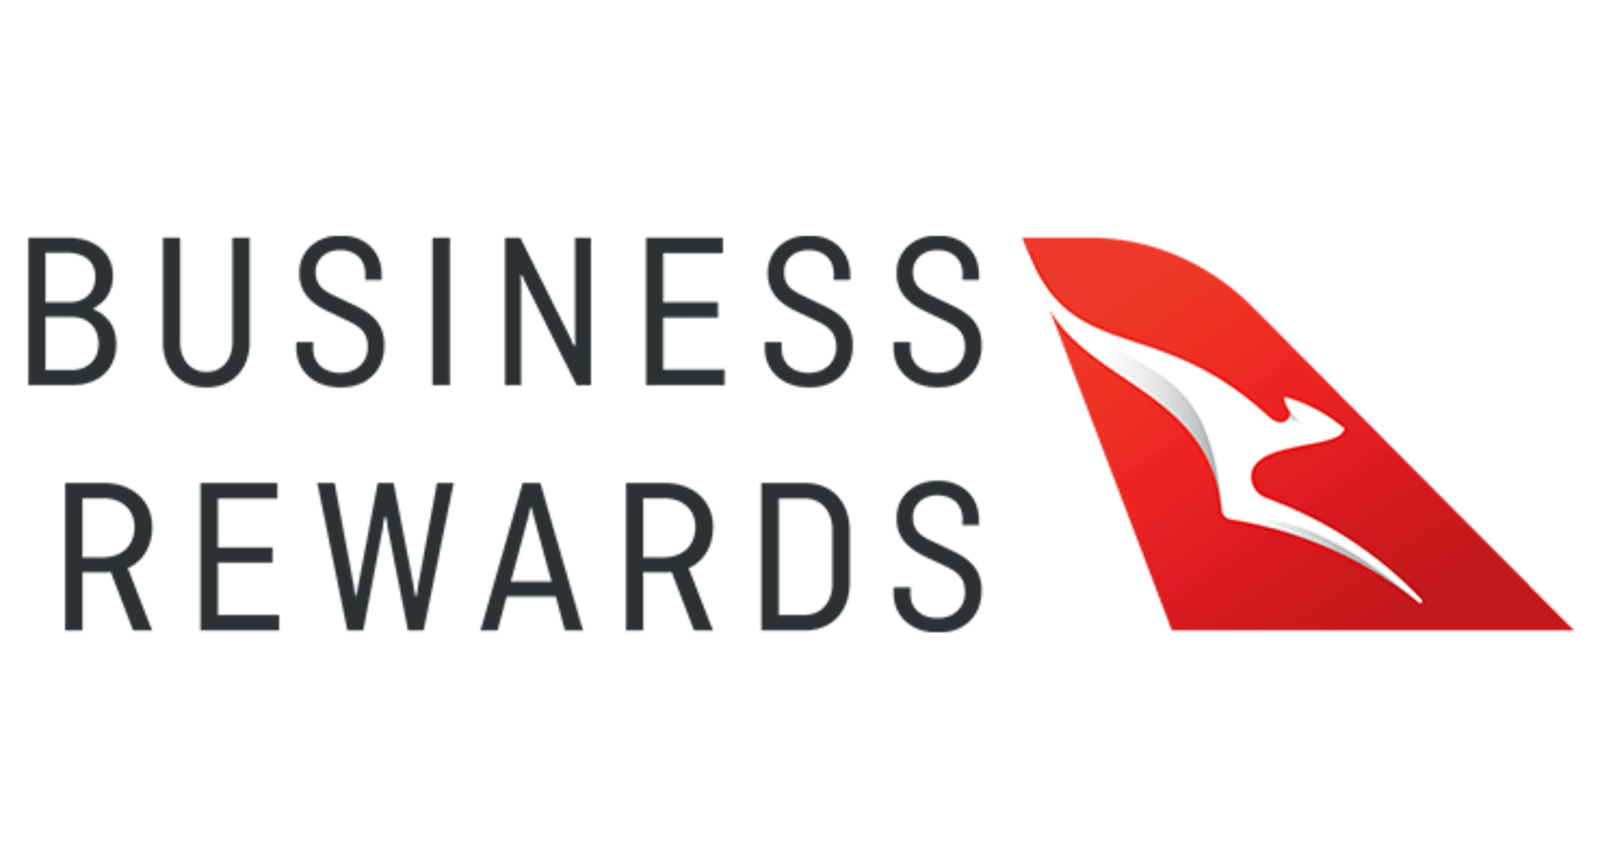 Qantas Business Rewards logo